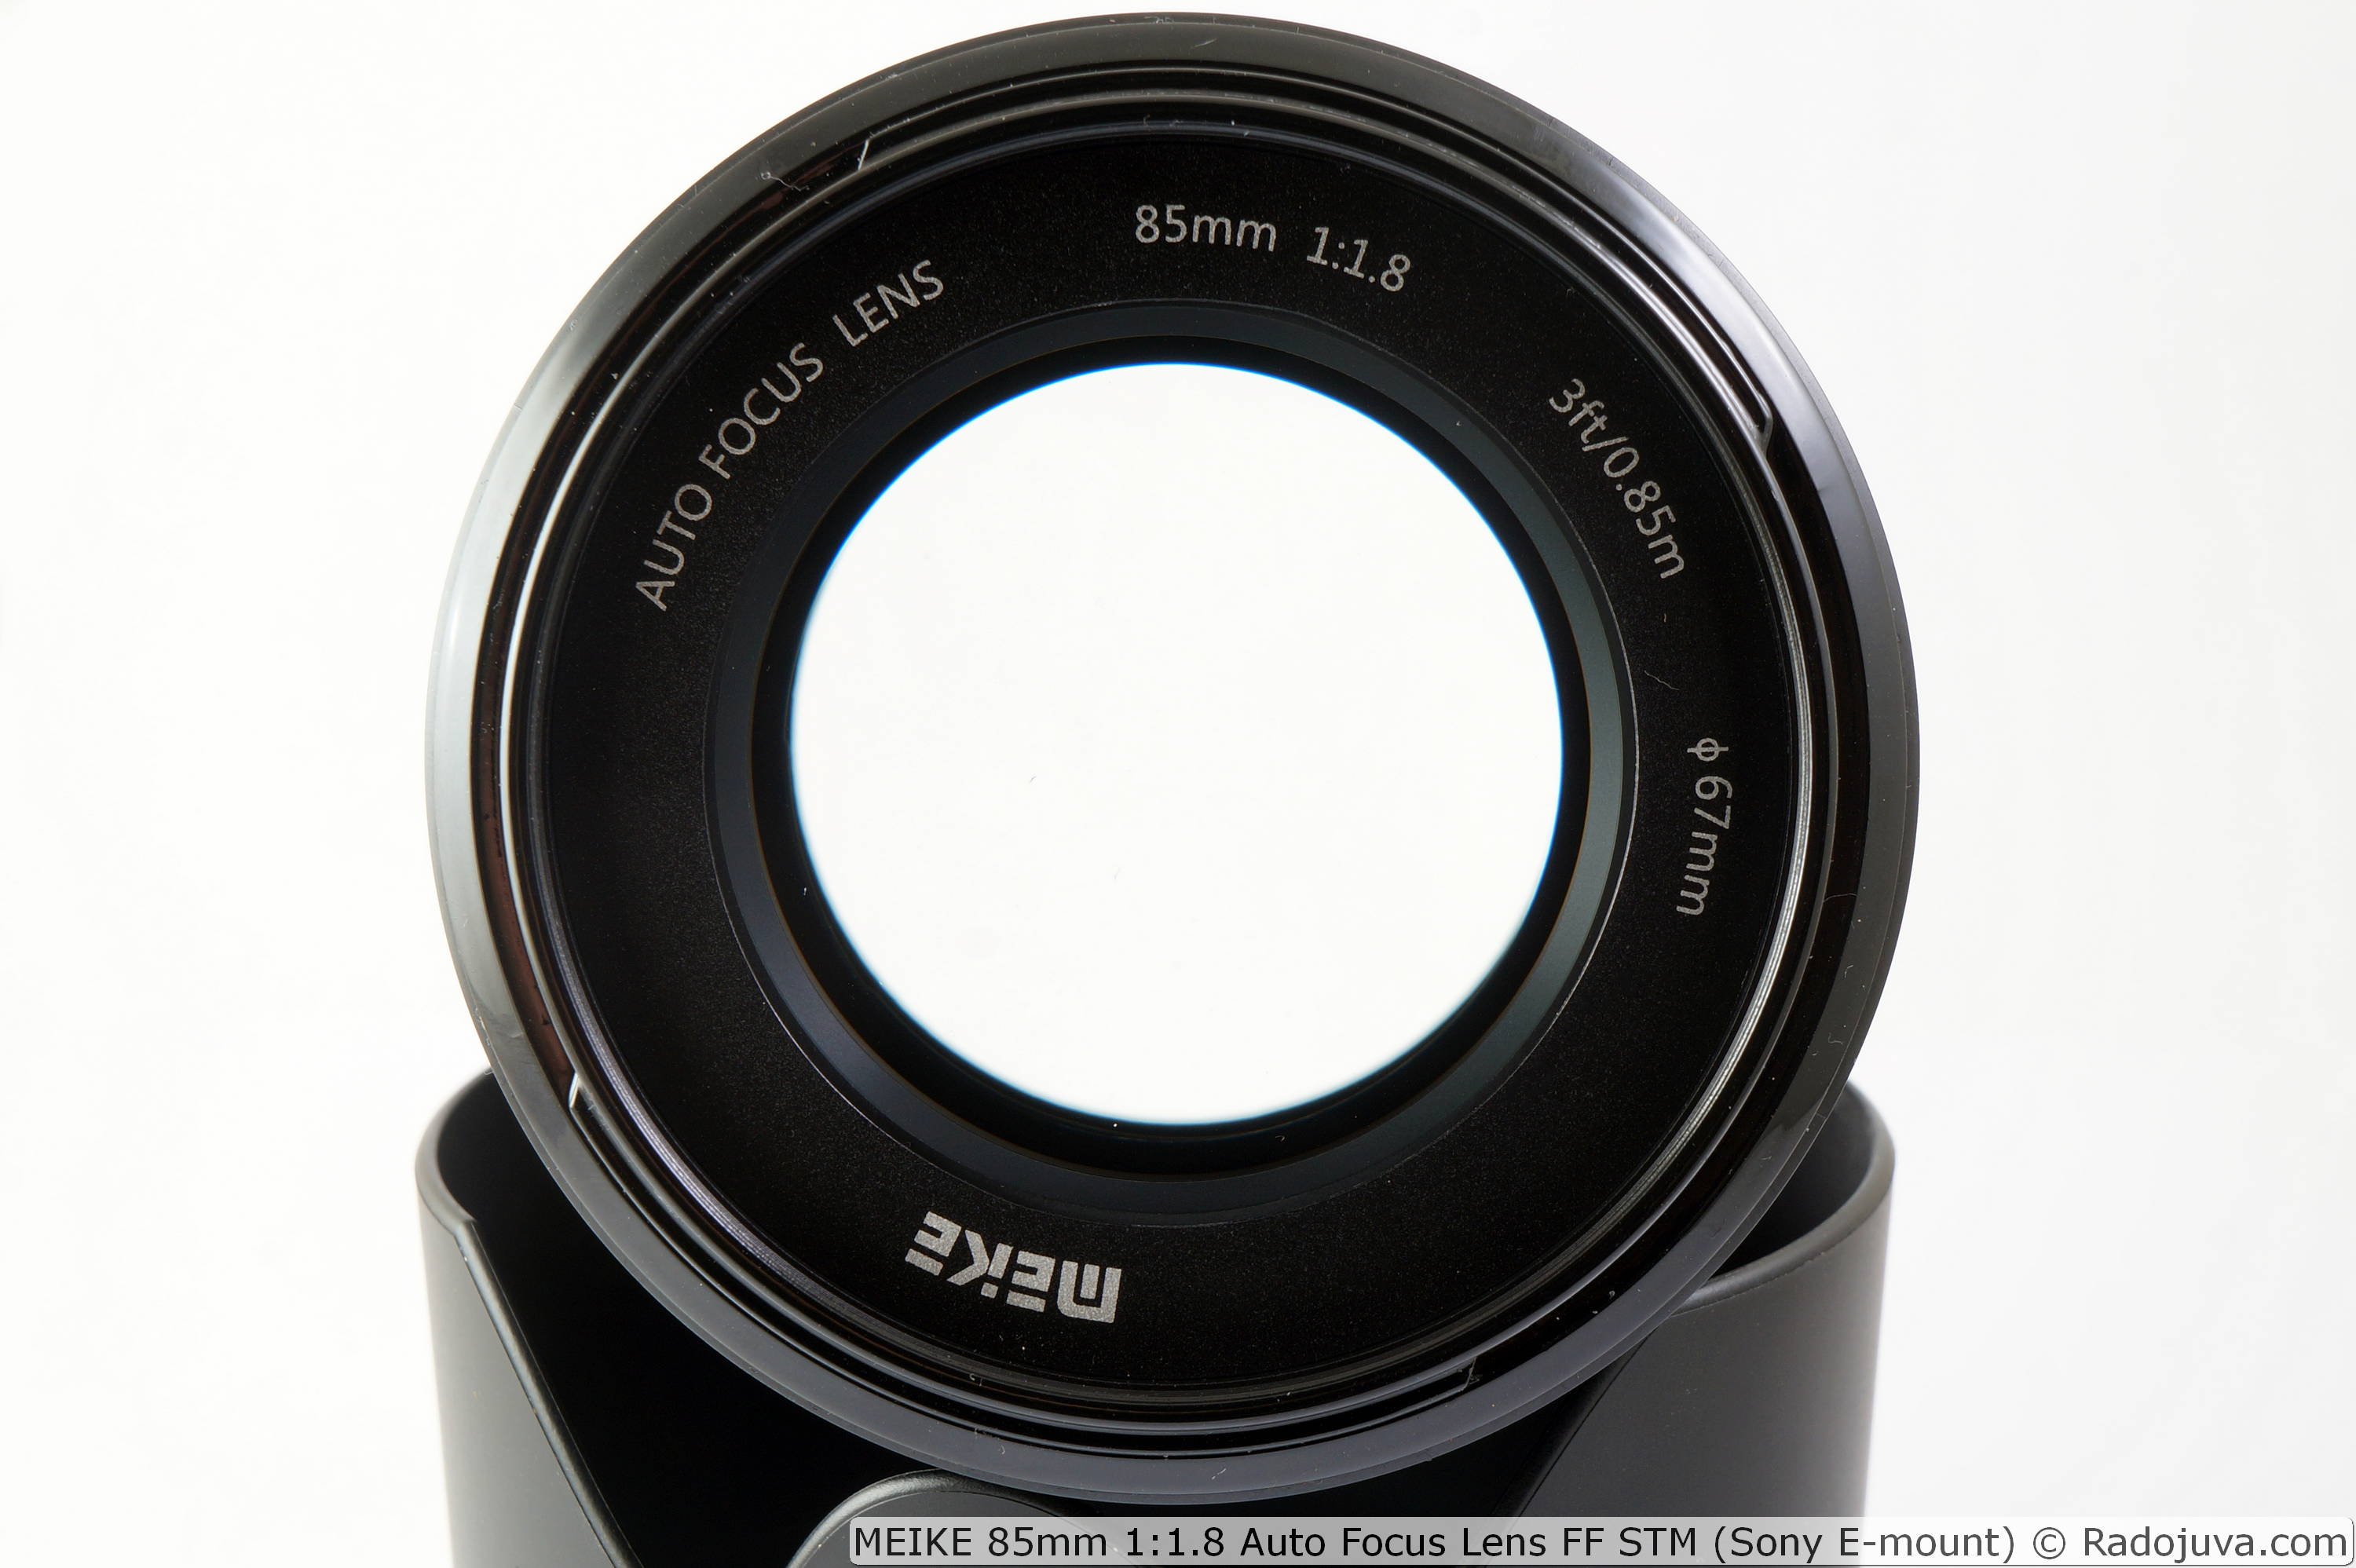 MEIKE 85mm 1:1.8 Auto Focus Lens FF STM